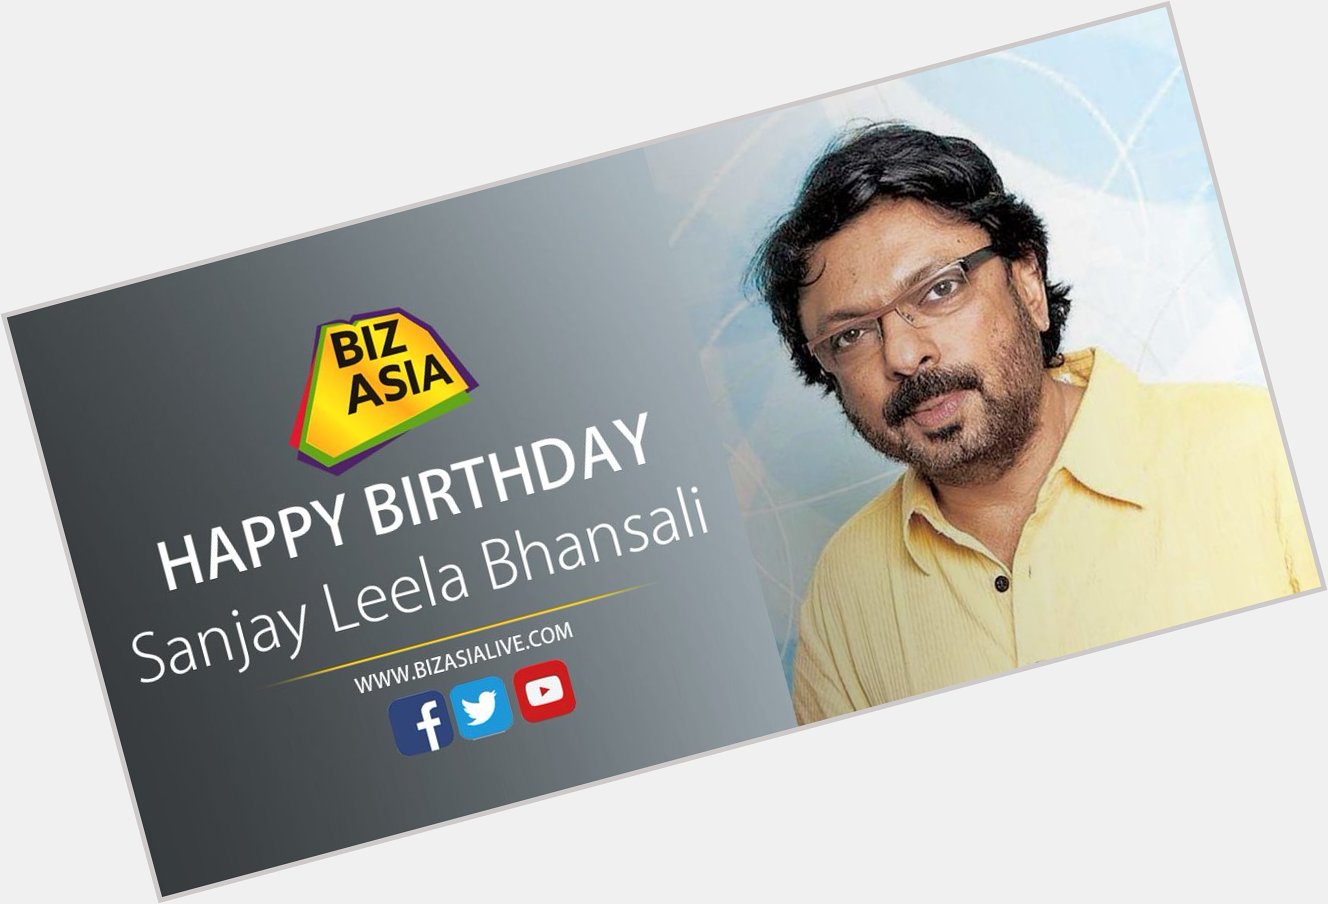  wishes Sanjay Leela Bhansali a very happy birthday. 